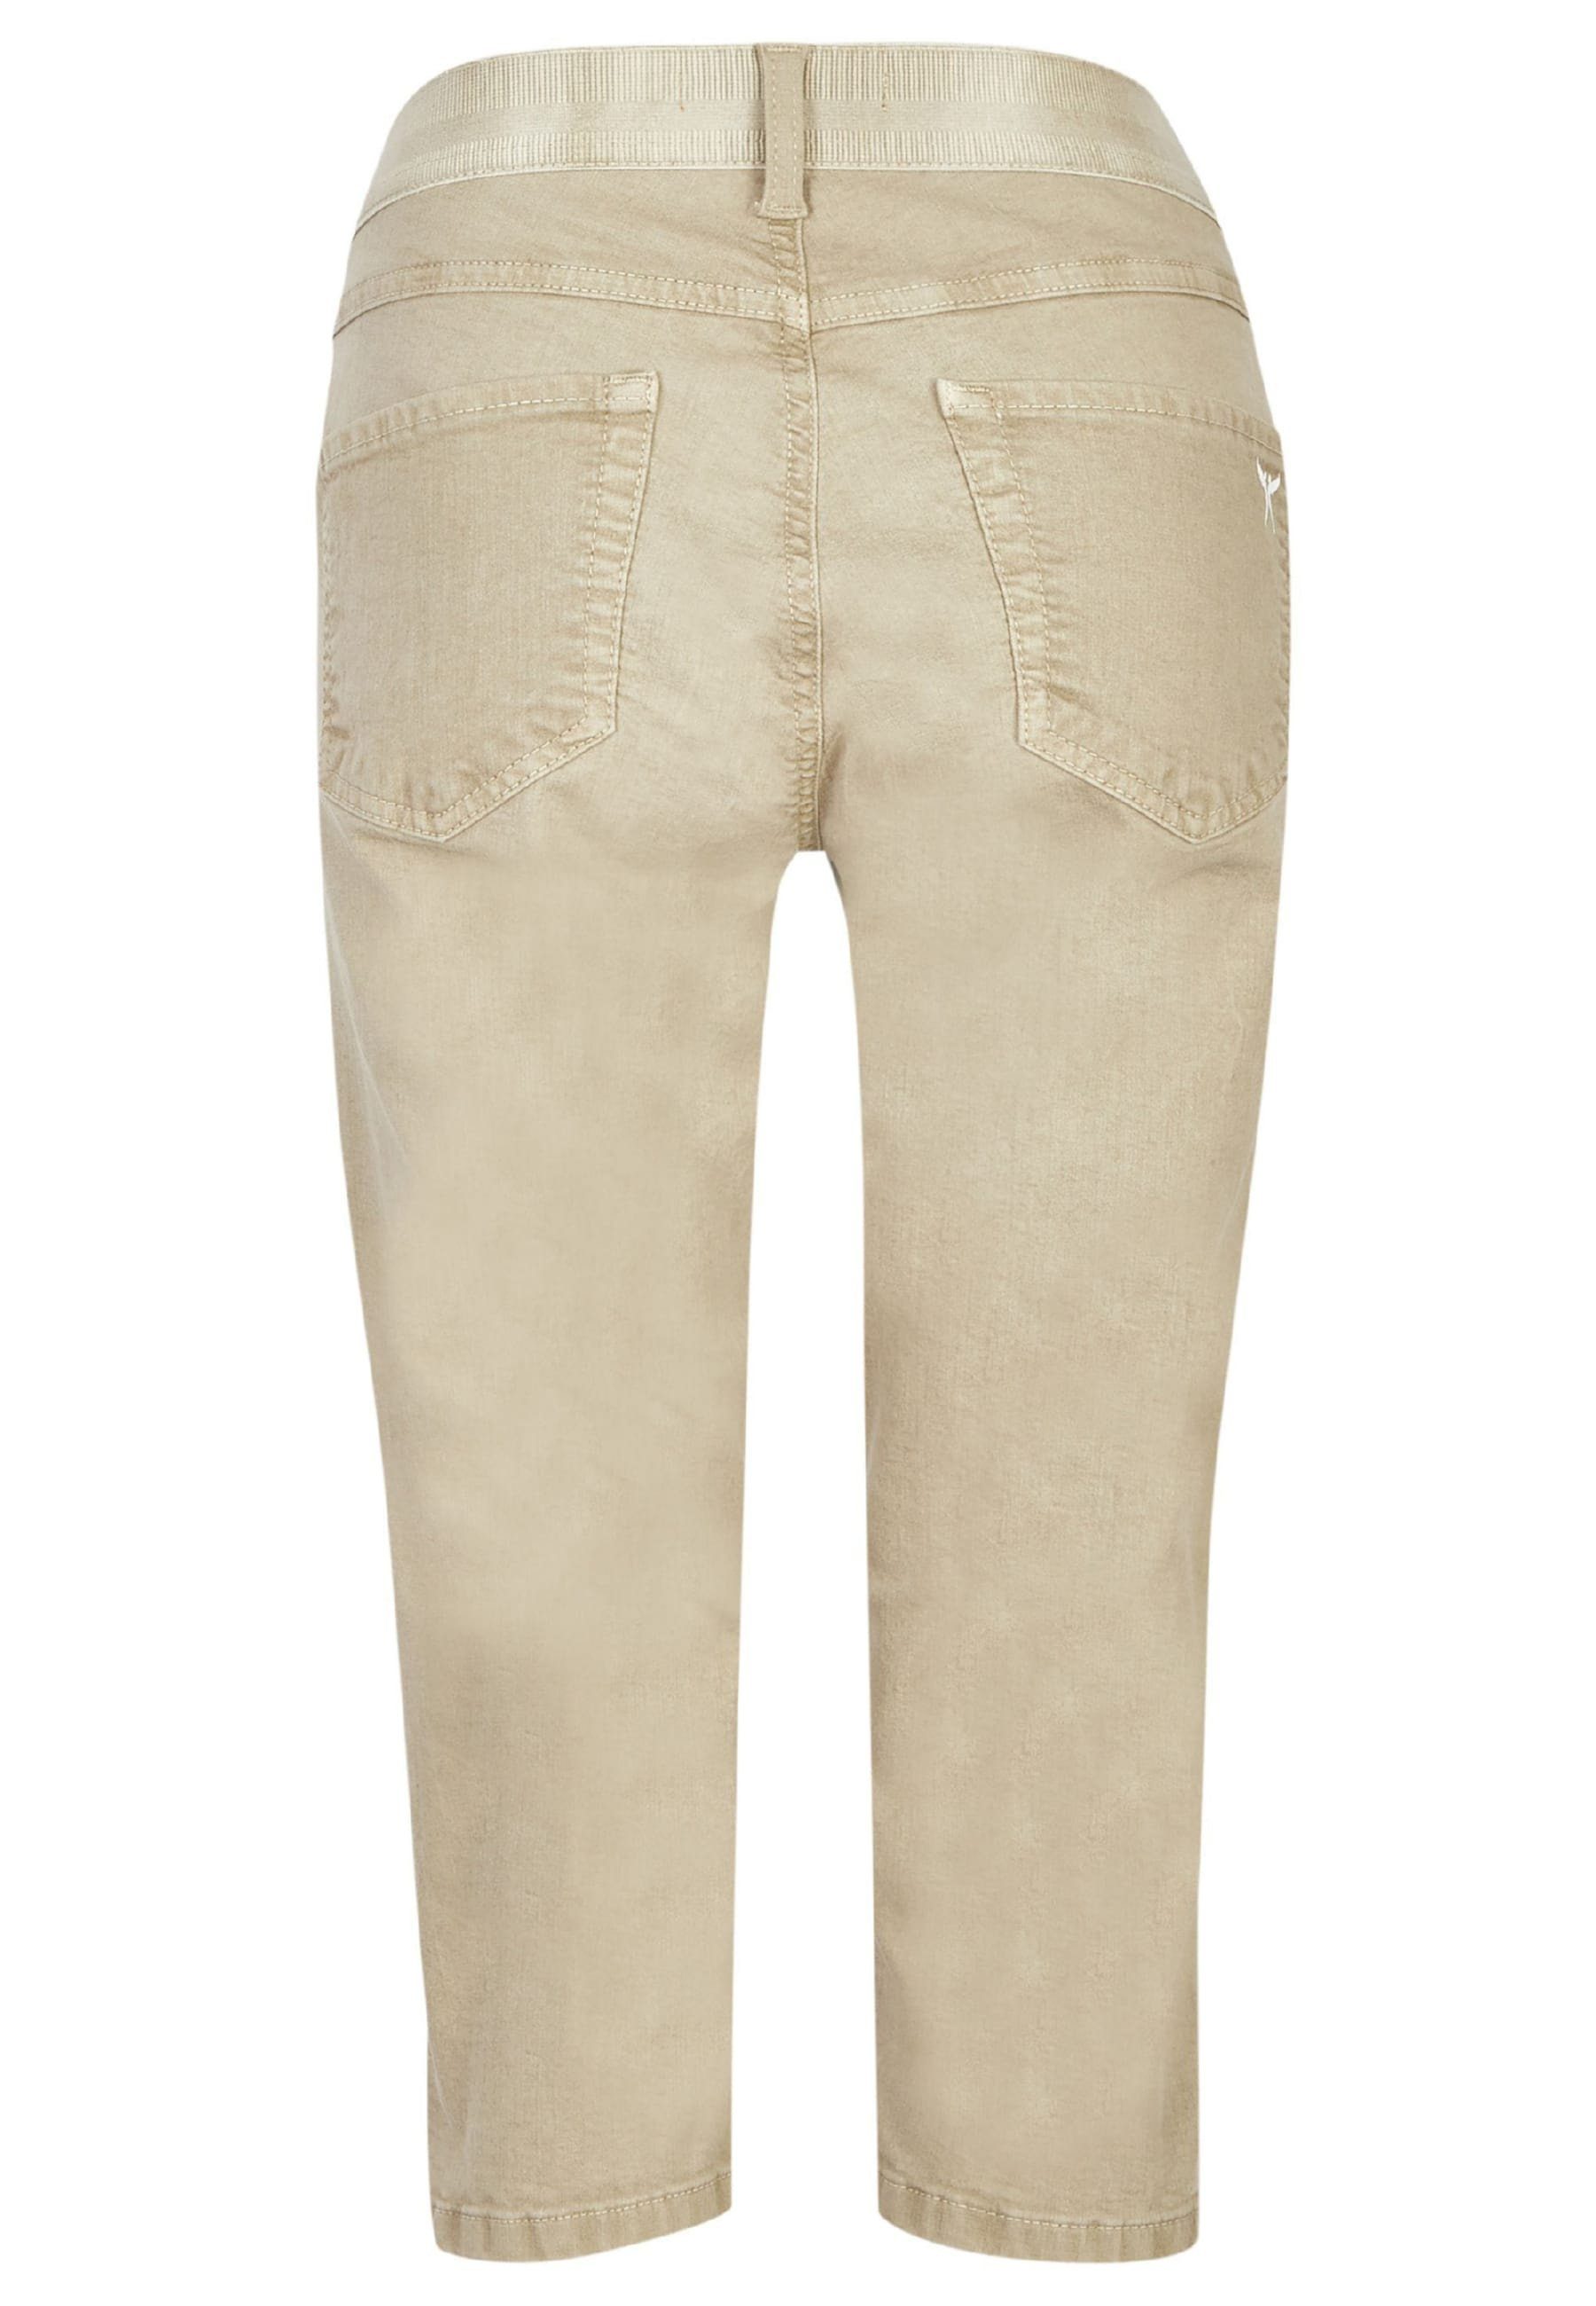 mit khaki Jeans mit ANGELS Capri Label-Applikationen Slim-fit-Jeans Denim OSFA Coloured